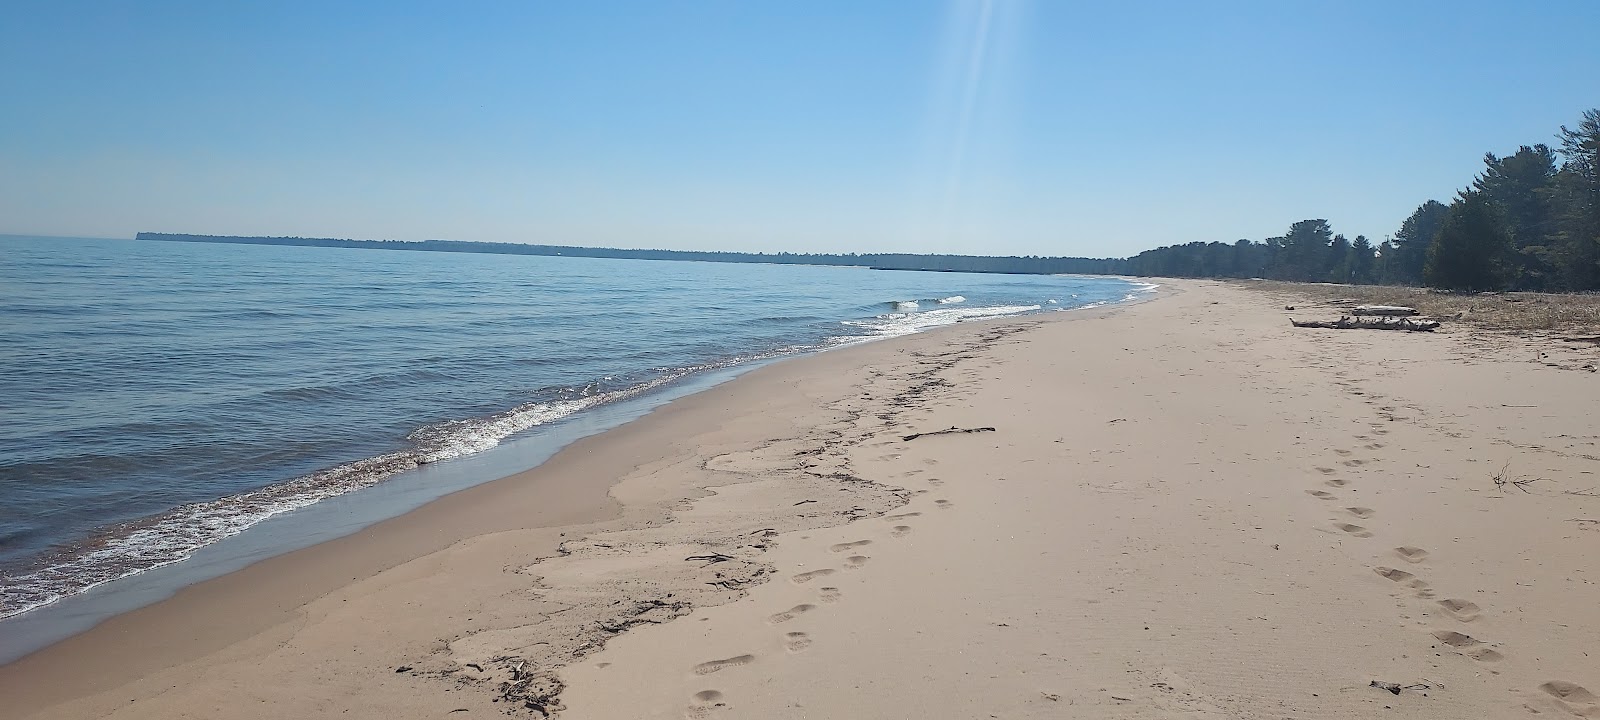 Fotografie cu Bete Gris Beach cu o suprafață de nisip strălucitor